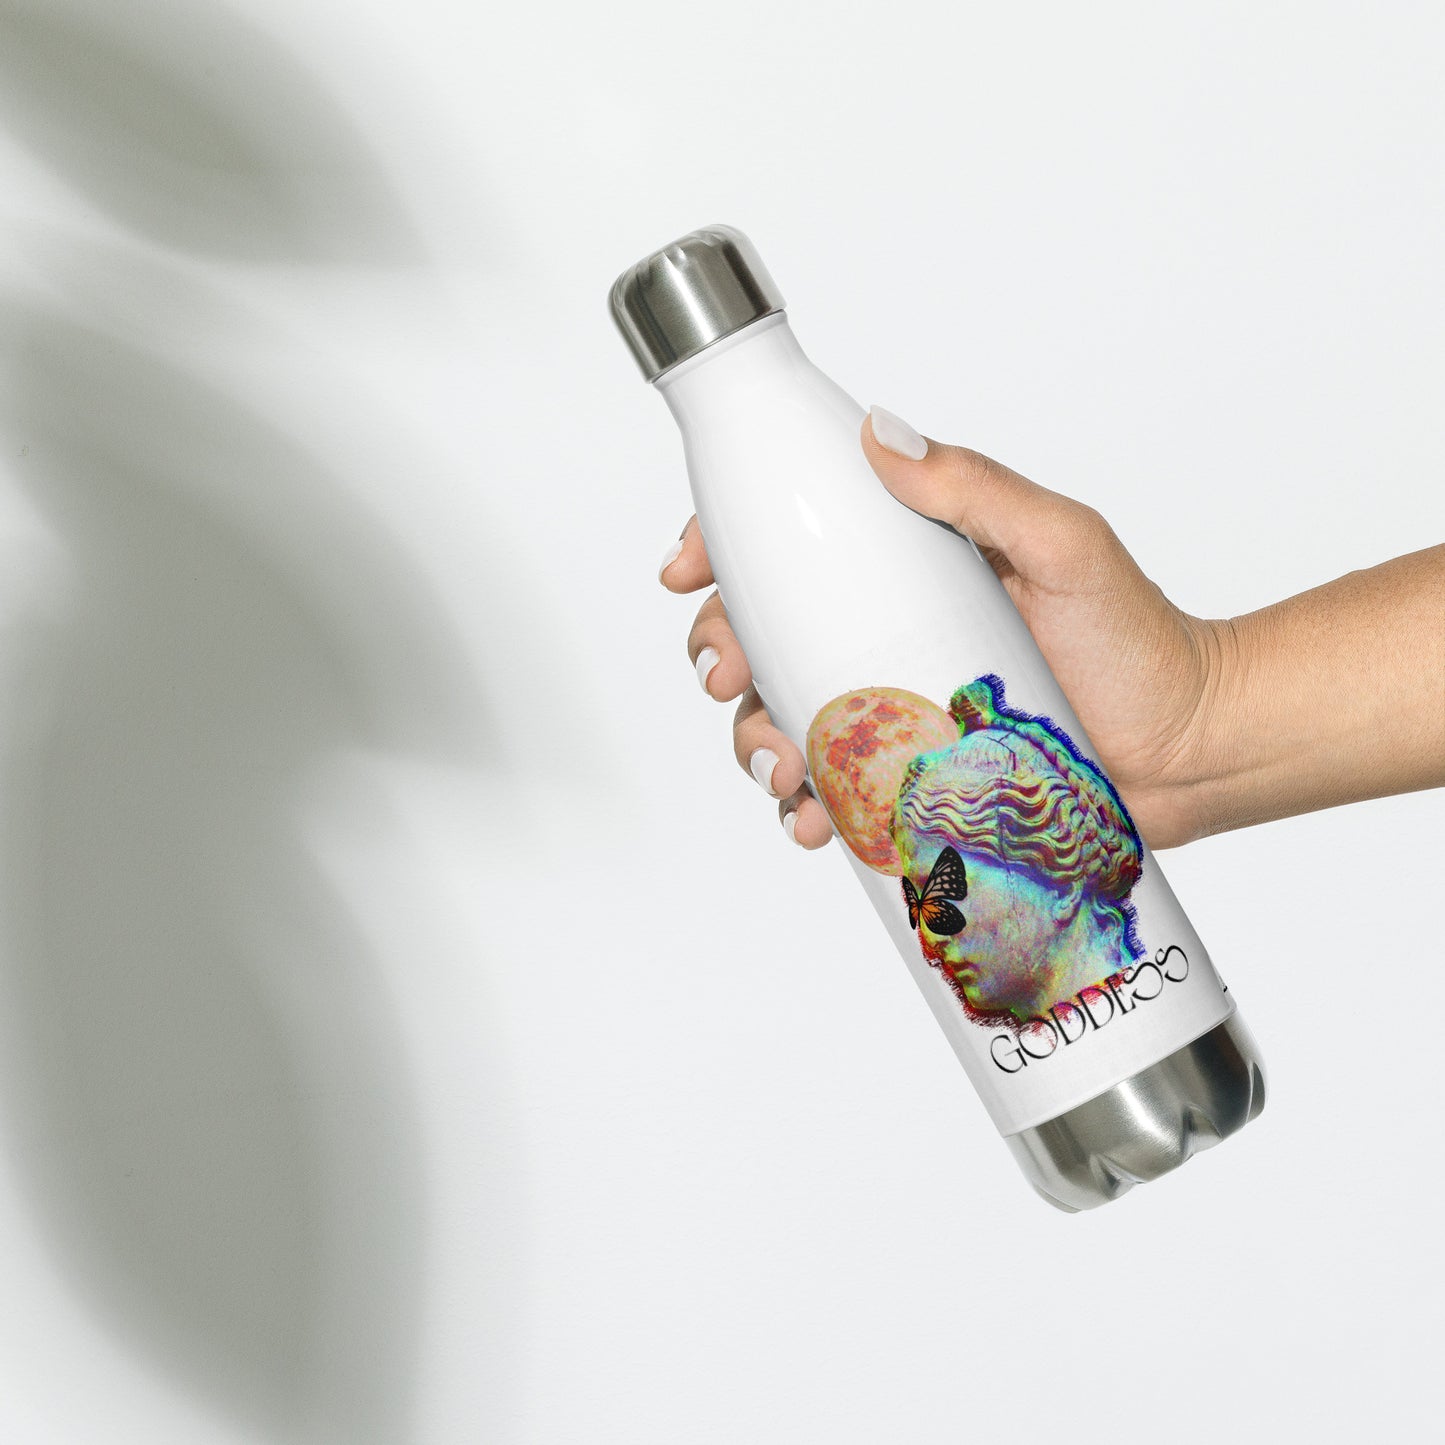 Goddess Full Moon Stainless steel water bottle